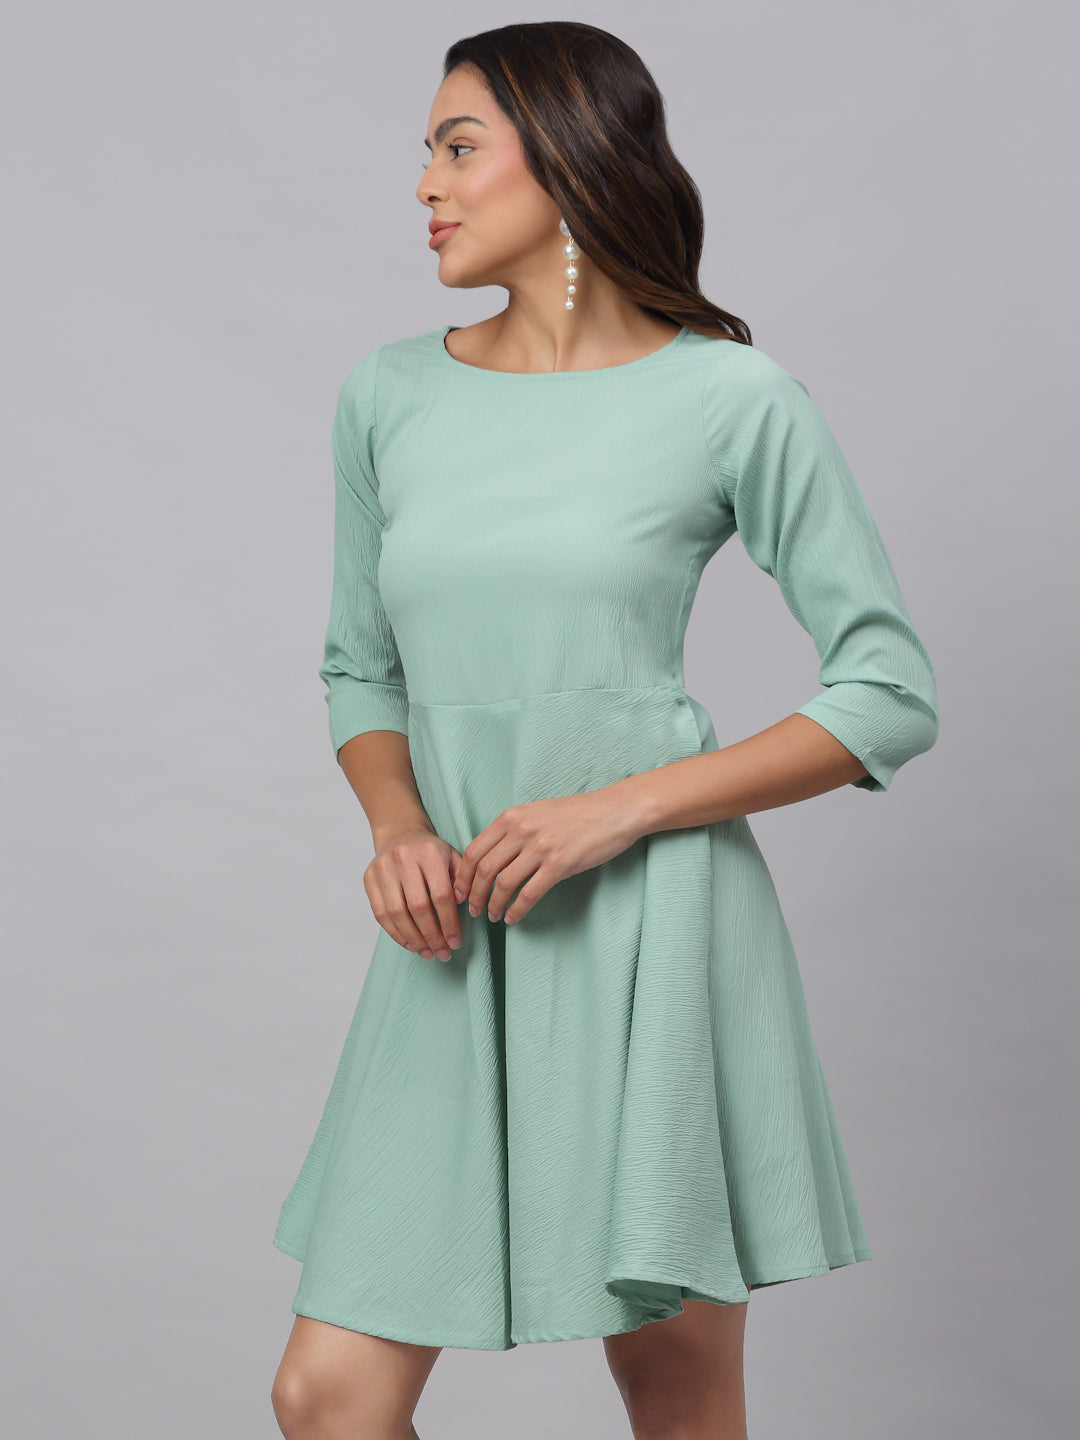 Women Green A-Line Dress ( JND 1001Green )